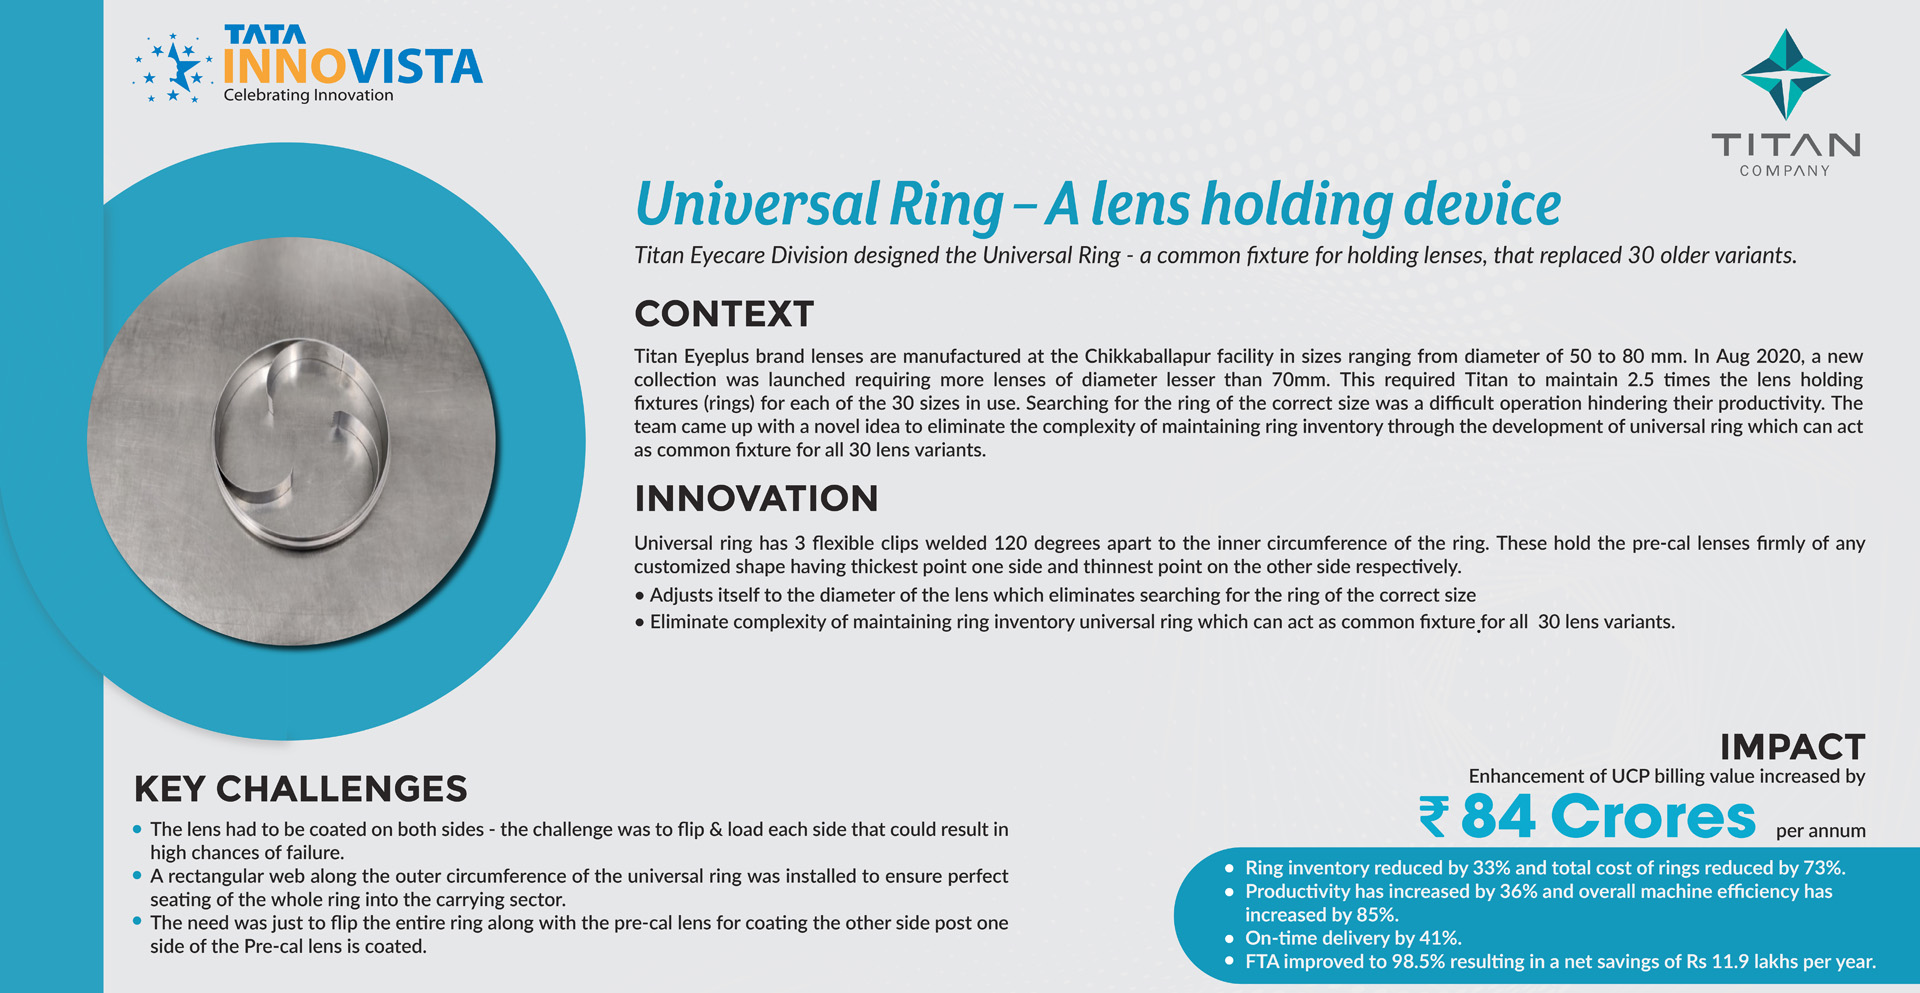 Titan - Universal Ring